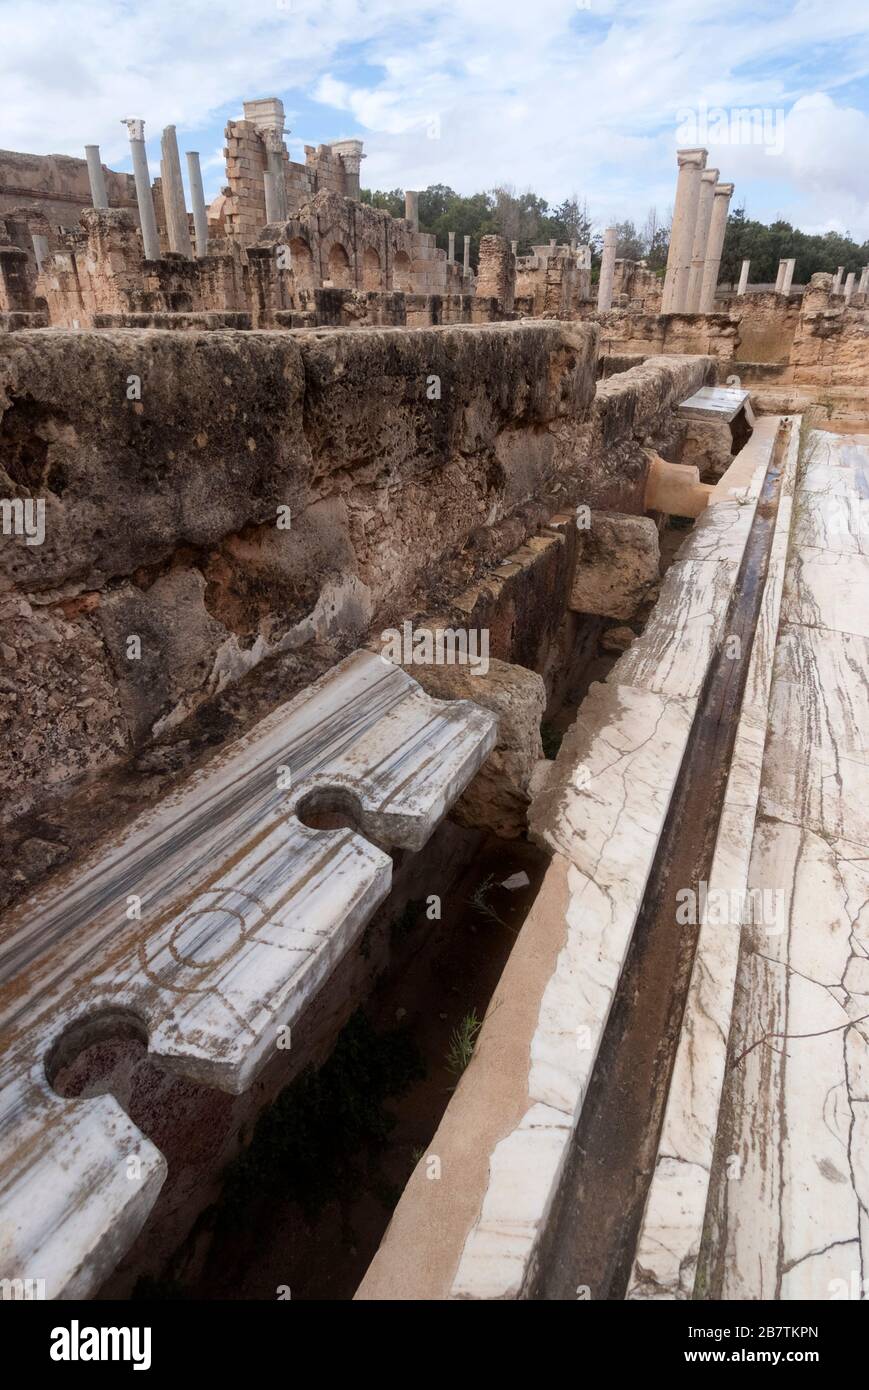 Alte römische Gemeinschaftspülung Toiletten, das UNESCO-Weltkulturerbe von Leptis Magna, Libyen, Oktober 2007. Stockfoto